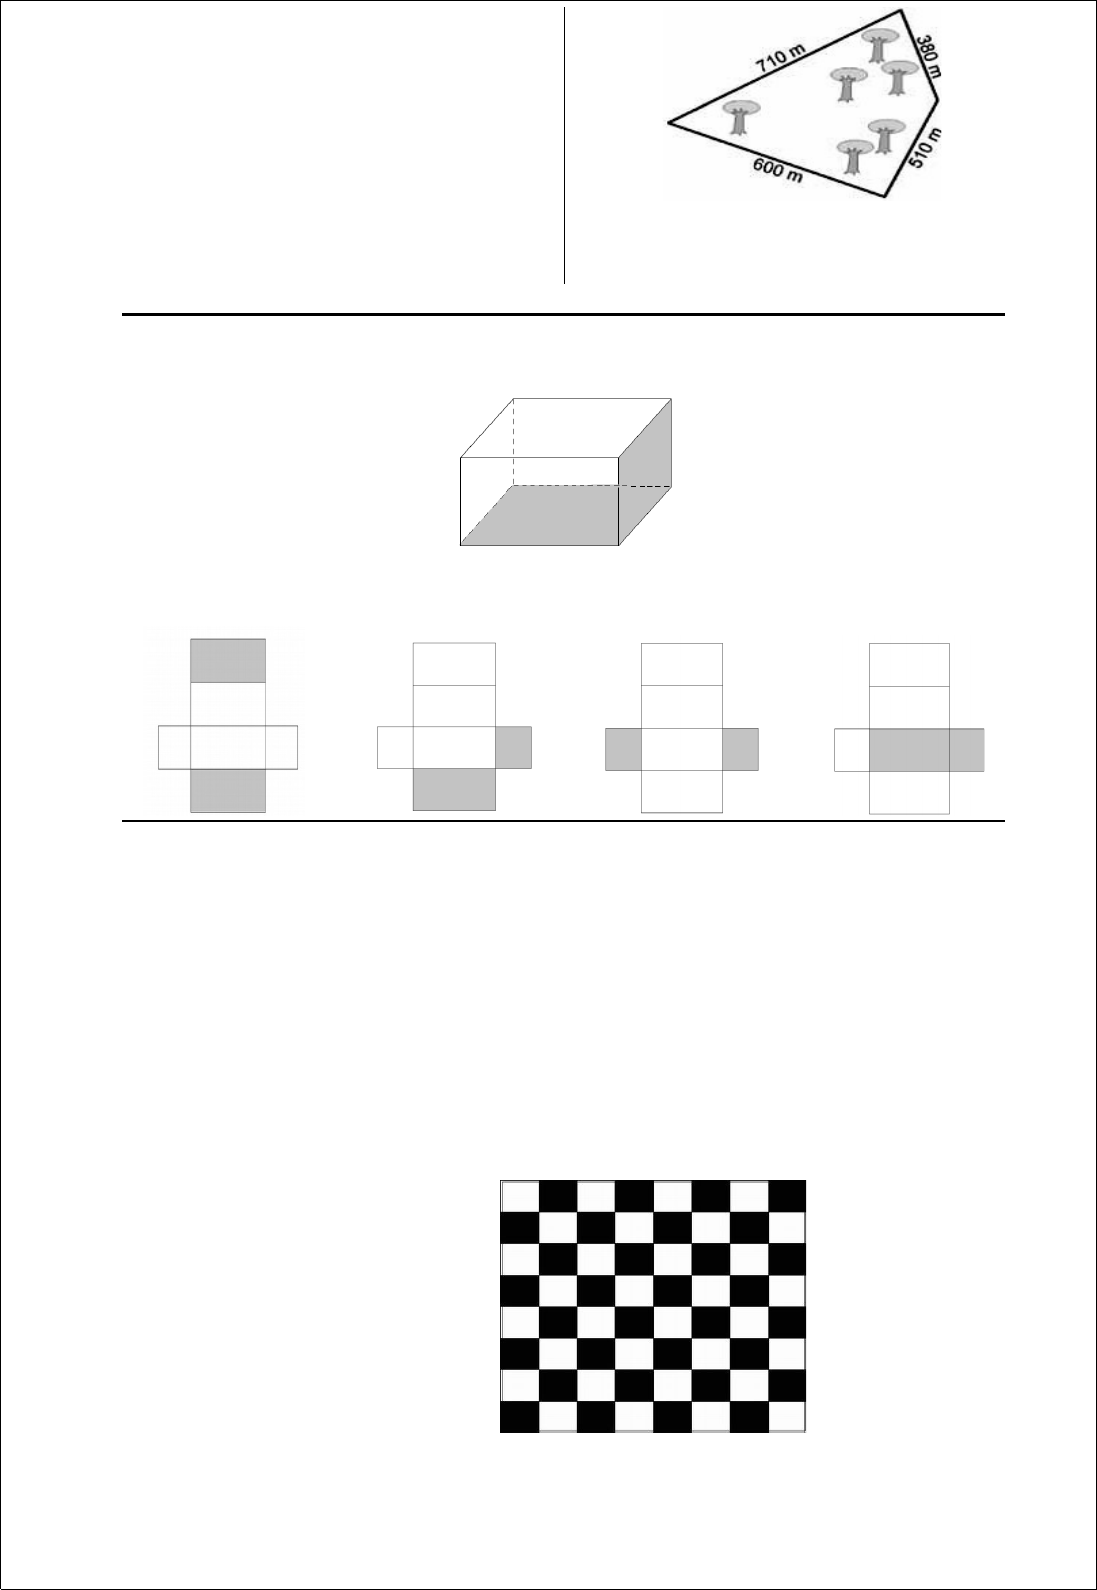 a fração que representa a parte preta desse tabuleiro de damas é : a) 1/2  b) 1/3 c) 1/4 d) 1/5 